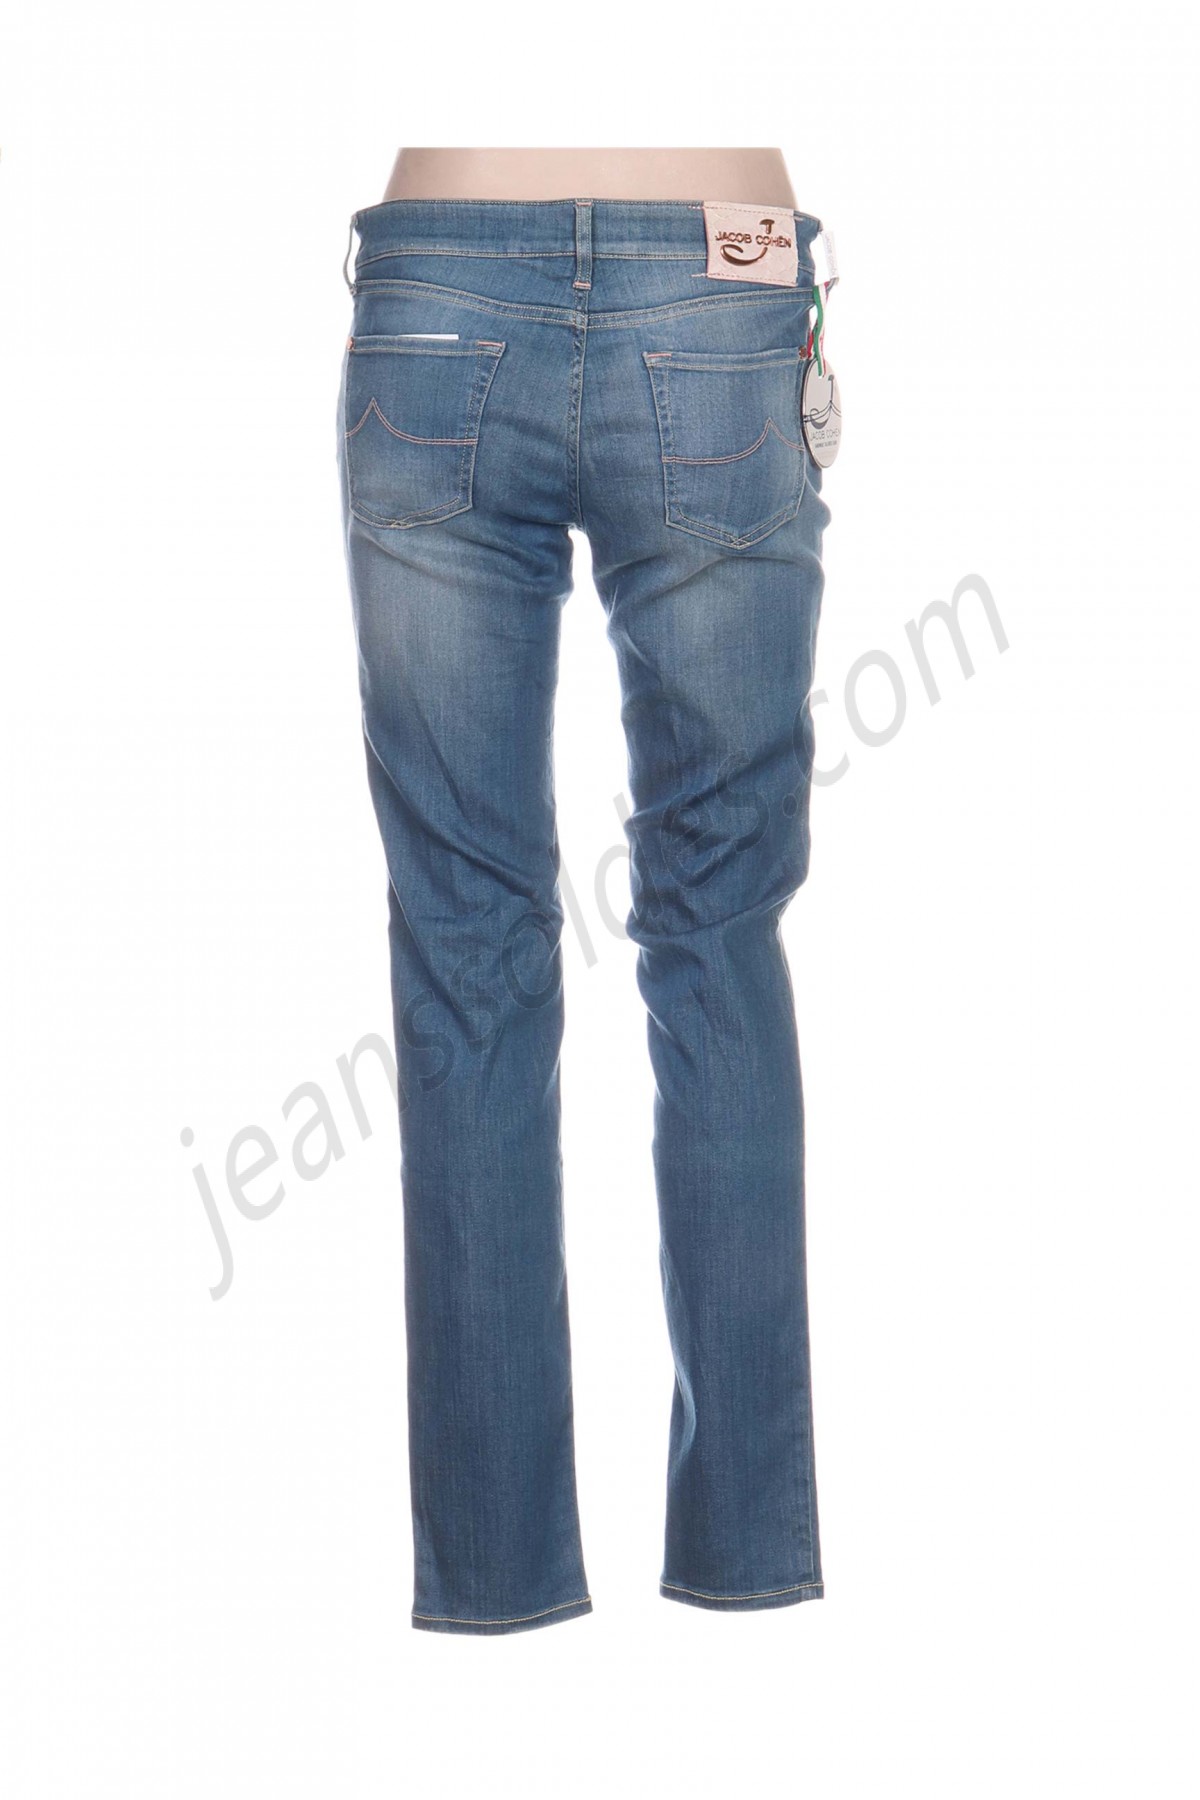 jacob cohen-Jeans coupe slim prix d’amis - -1